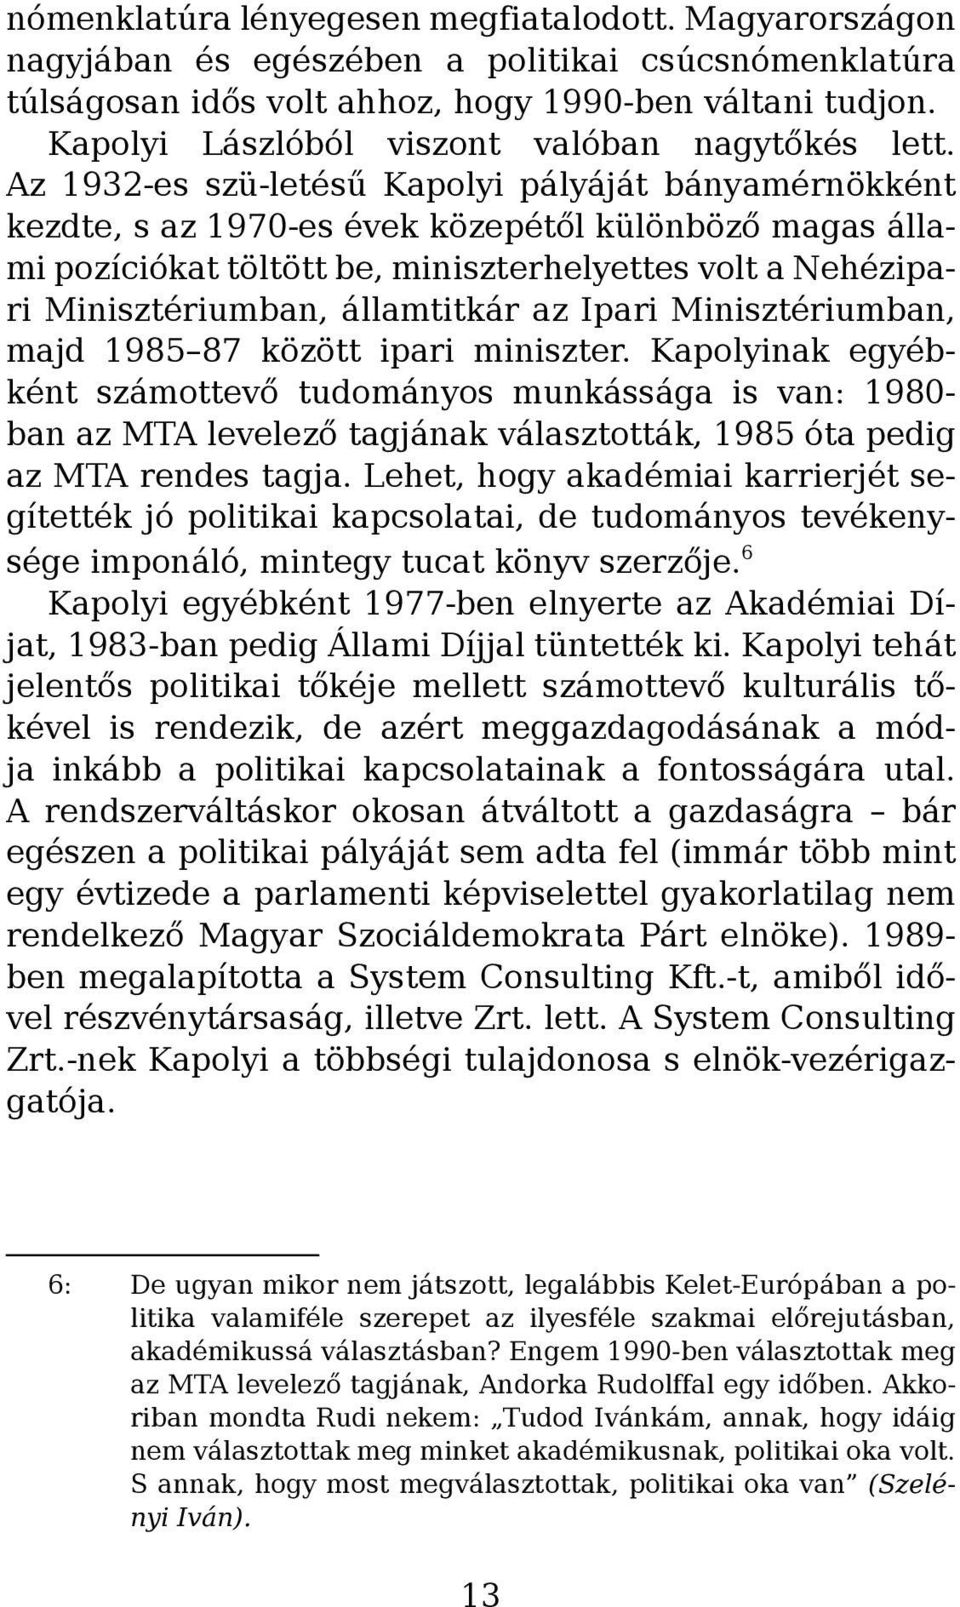 Az 1932-es szü-letésű Kapolyi pályáját bányamérnökként kezdte, s az 1970-es évek közepétől különböző magas állami pozíciókat töltött be, miniszterhelyettes volt a Nehézipari Minisztériumban,